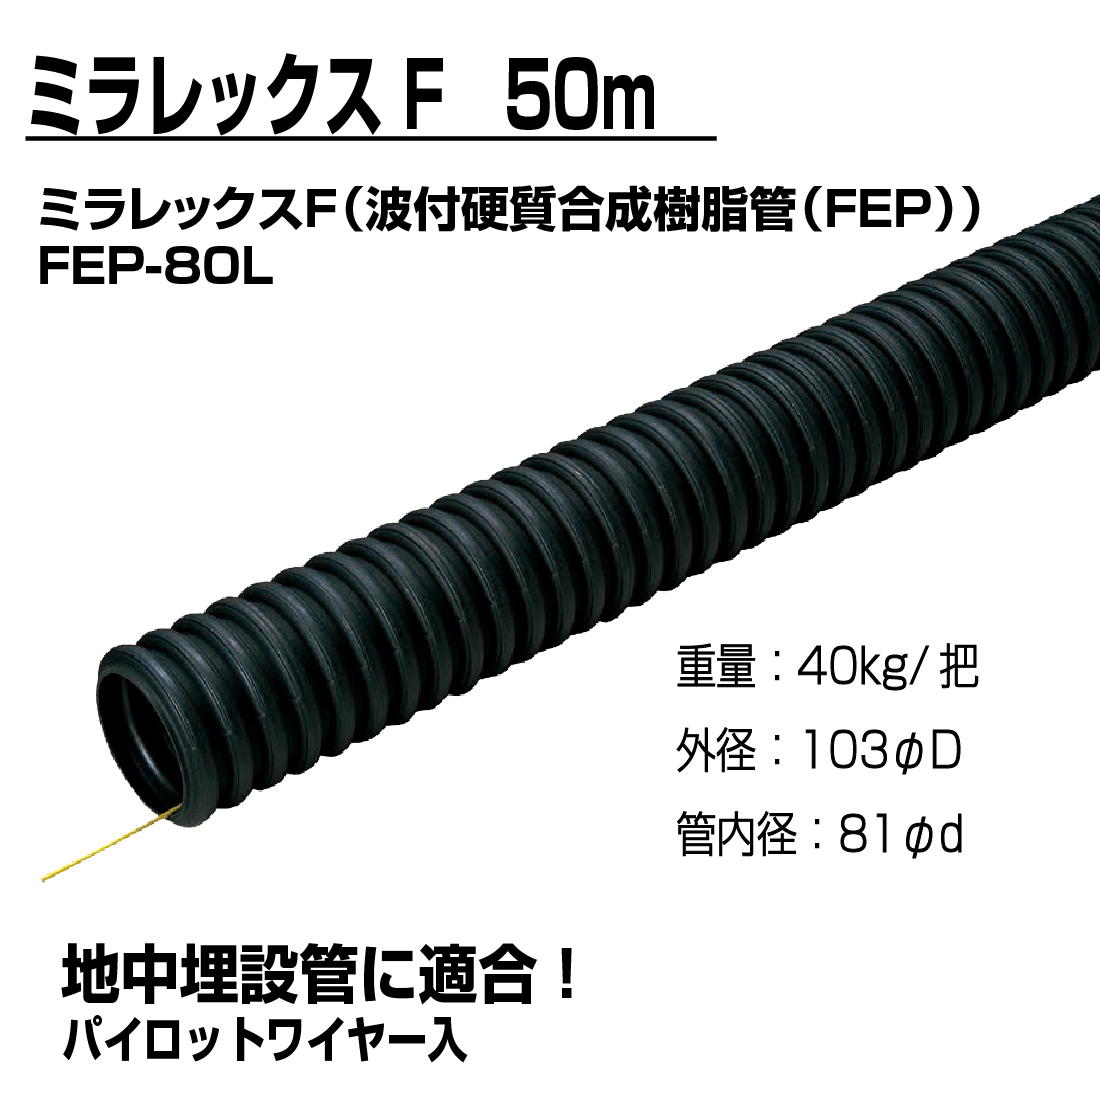 法人限定) ミラレックスF FEP-80L 50m 波付硬質合成樹脂管・電力用